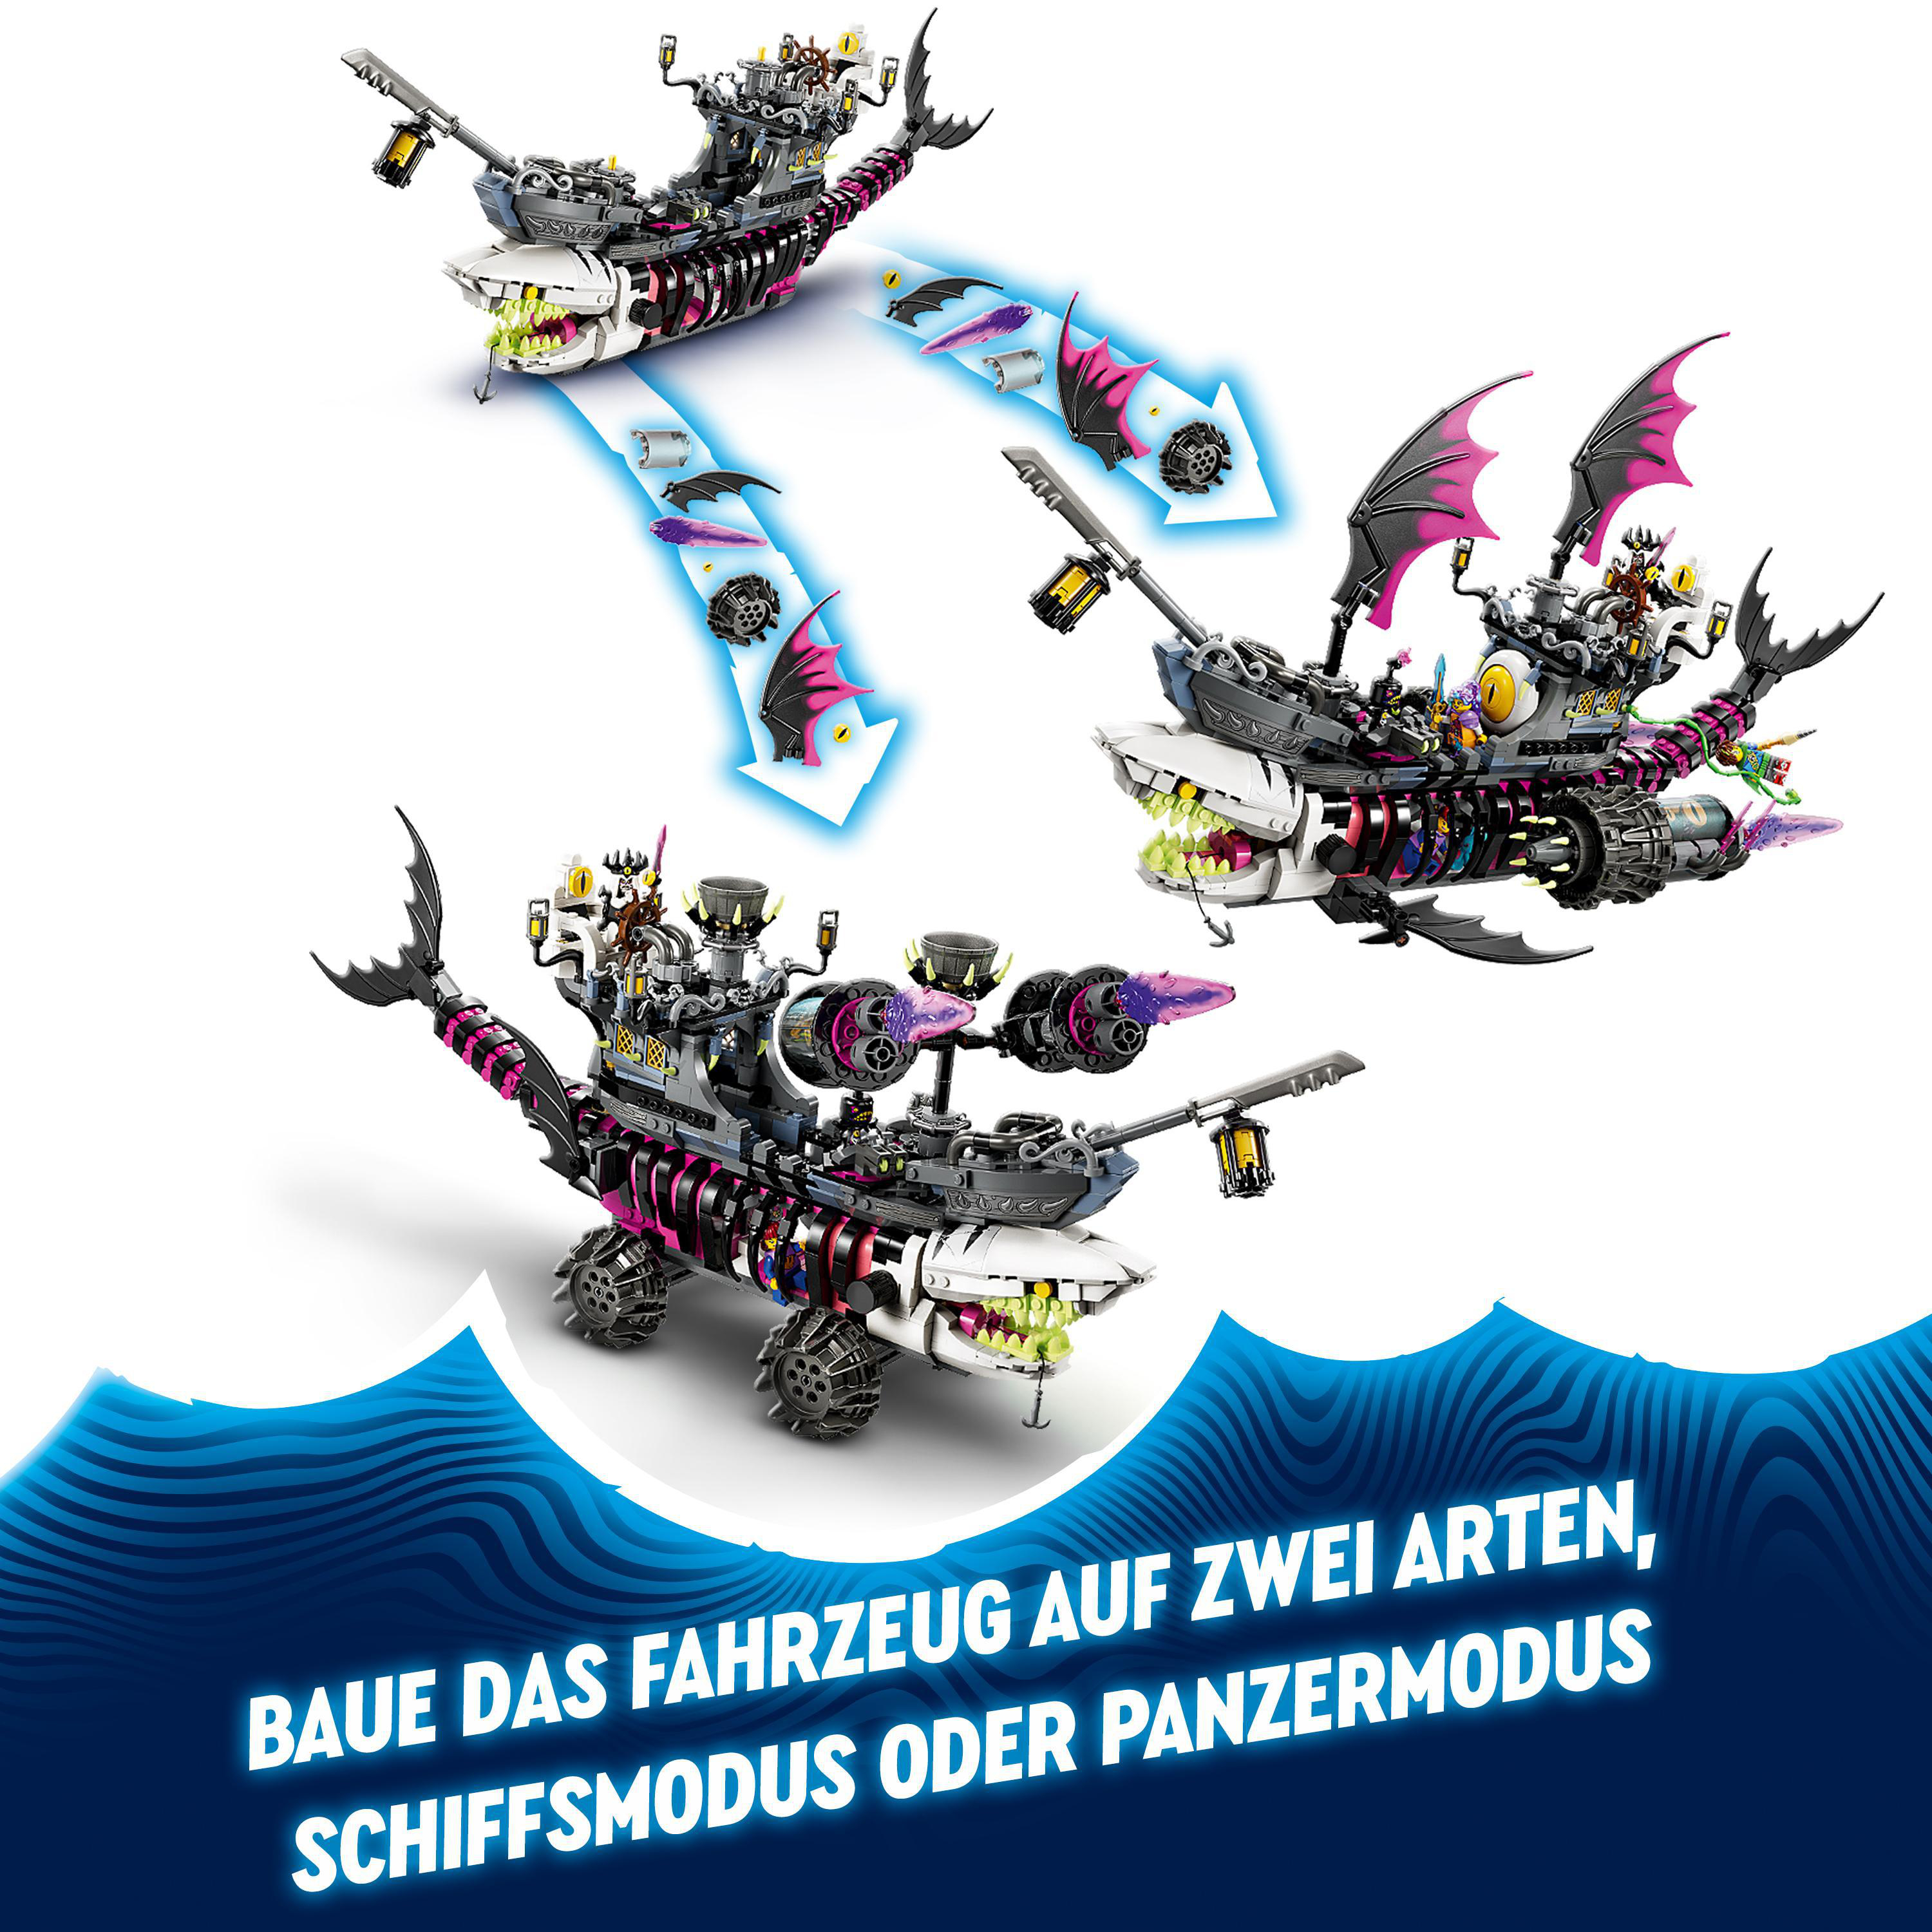 LEGO DREAMZzz Mehrfarbig Bausatz, 71469 Albtraum-Haischiff